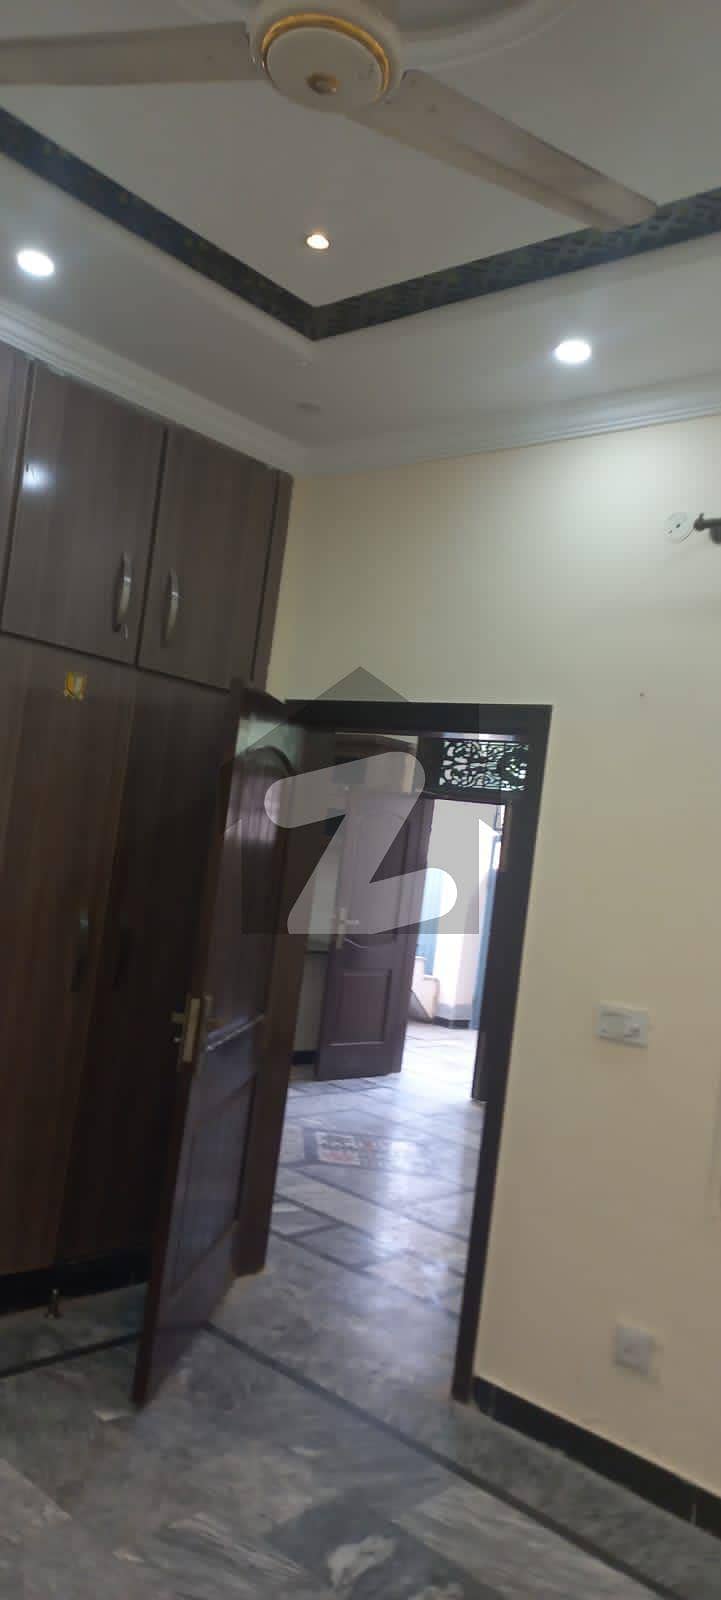 ڈی - 14 اسلام آباد میں 4 کمروں کا 5 مرلہ مکان 75 لاکھ میں برائے فروخت۔